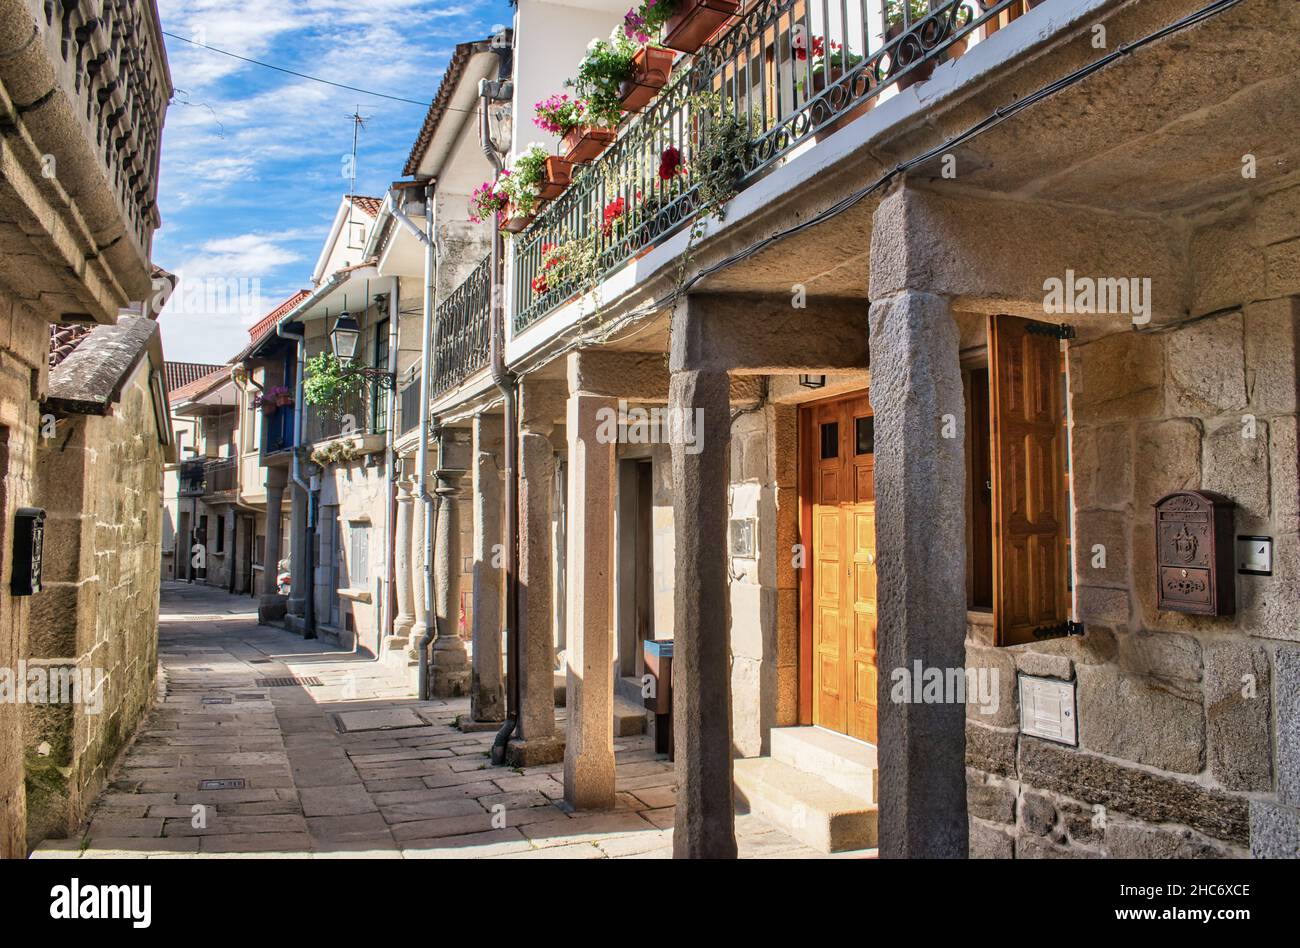 Calle peatonal de estilo medieval en la villa de Combarro, España Stock Photo